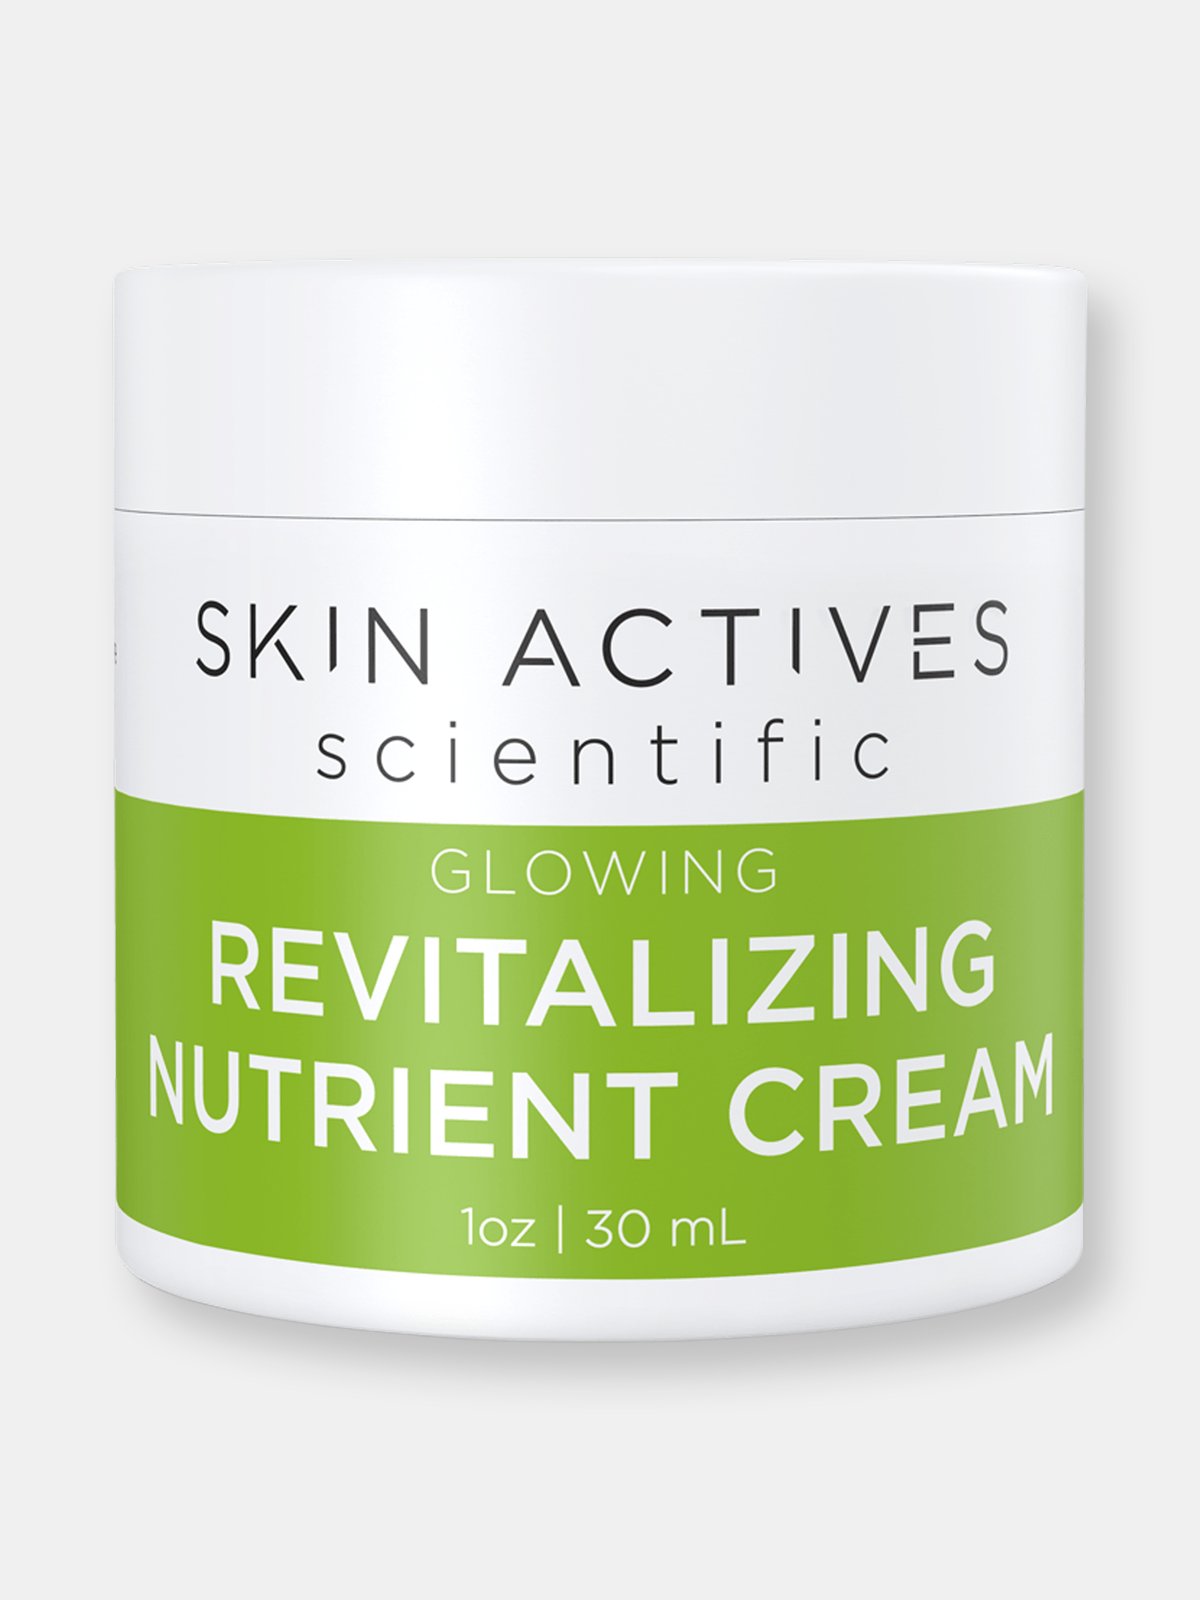 Skin Actives Scientific Revitalizing Nutrient Cream | Glowing